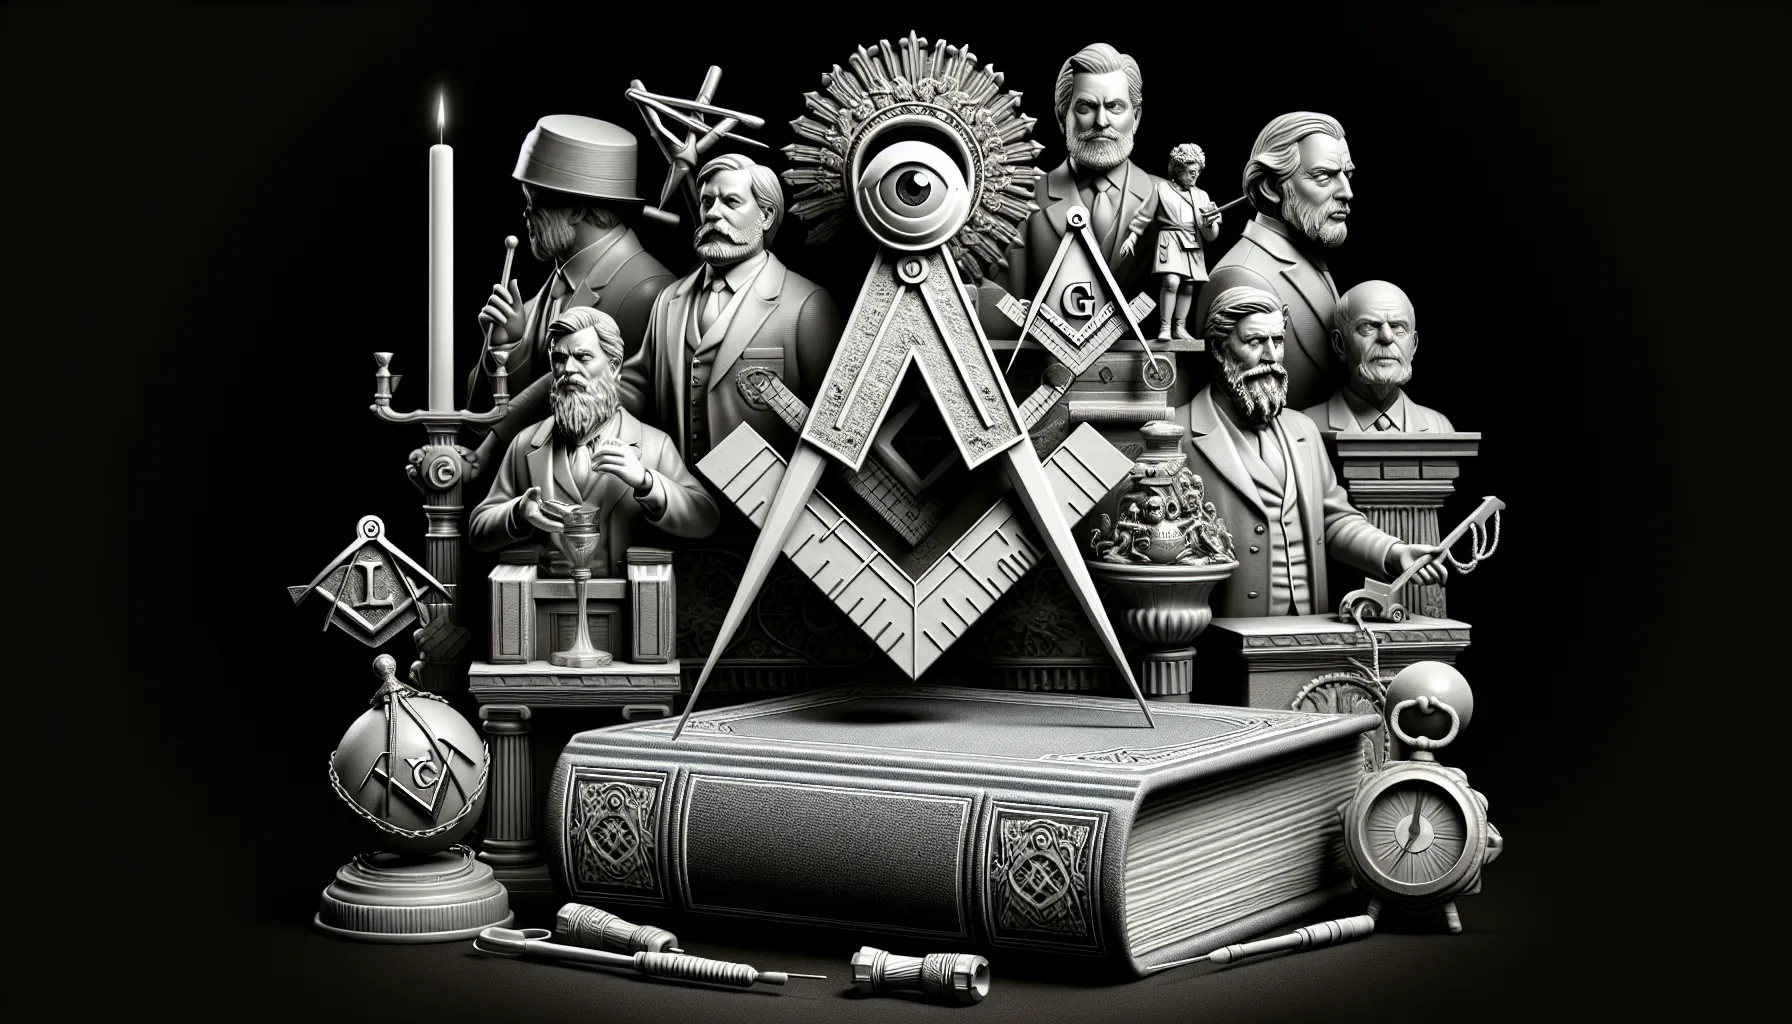 Imagen representativa de la masonería y sus creencias.